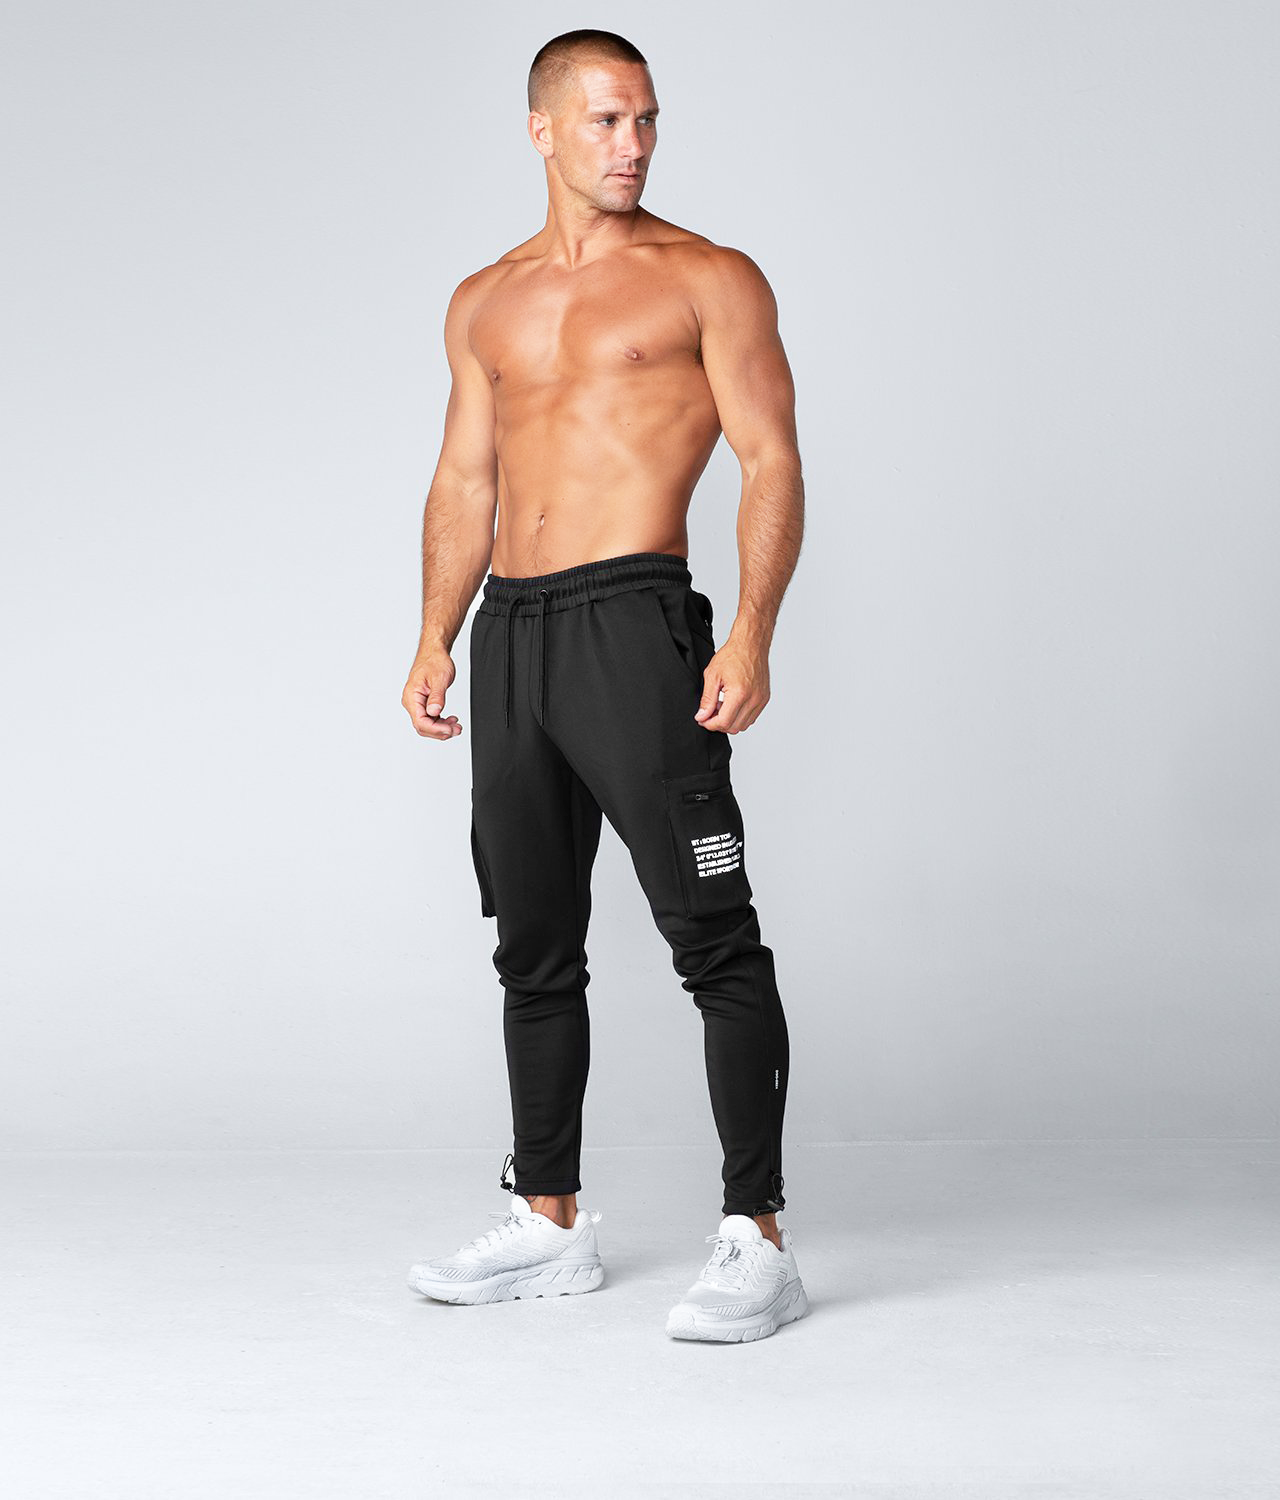 https://www.borntough.com/cdn/shop/products/born-tough-momentum-cargo-black-gym-workout-jogger-pants-for-men.png?v=1673447635